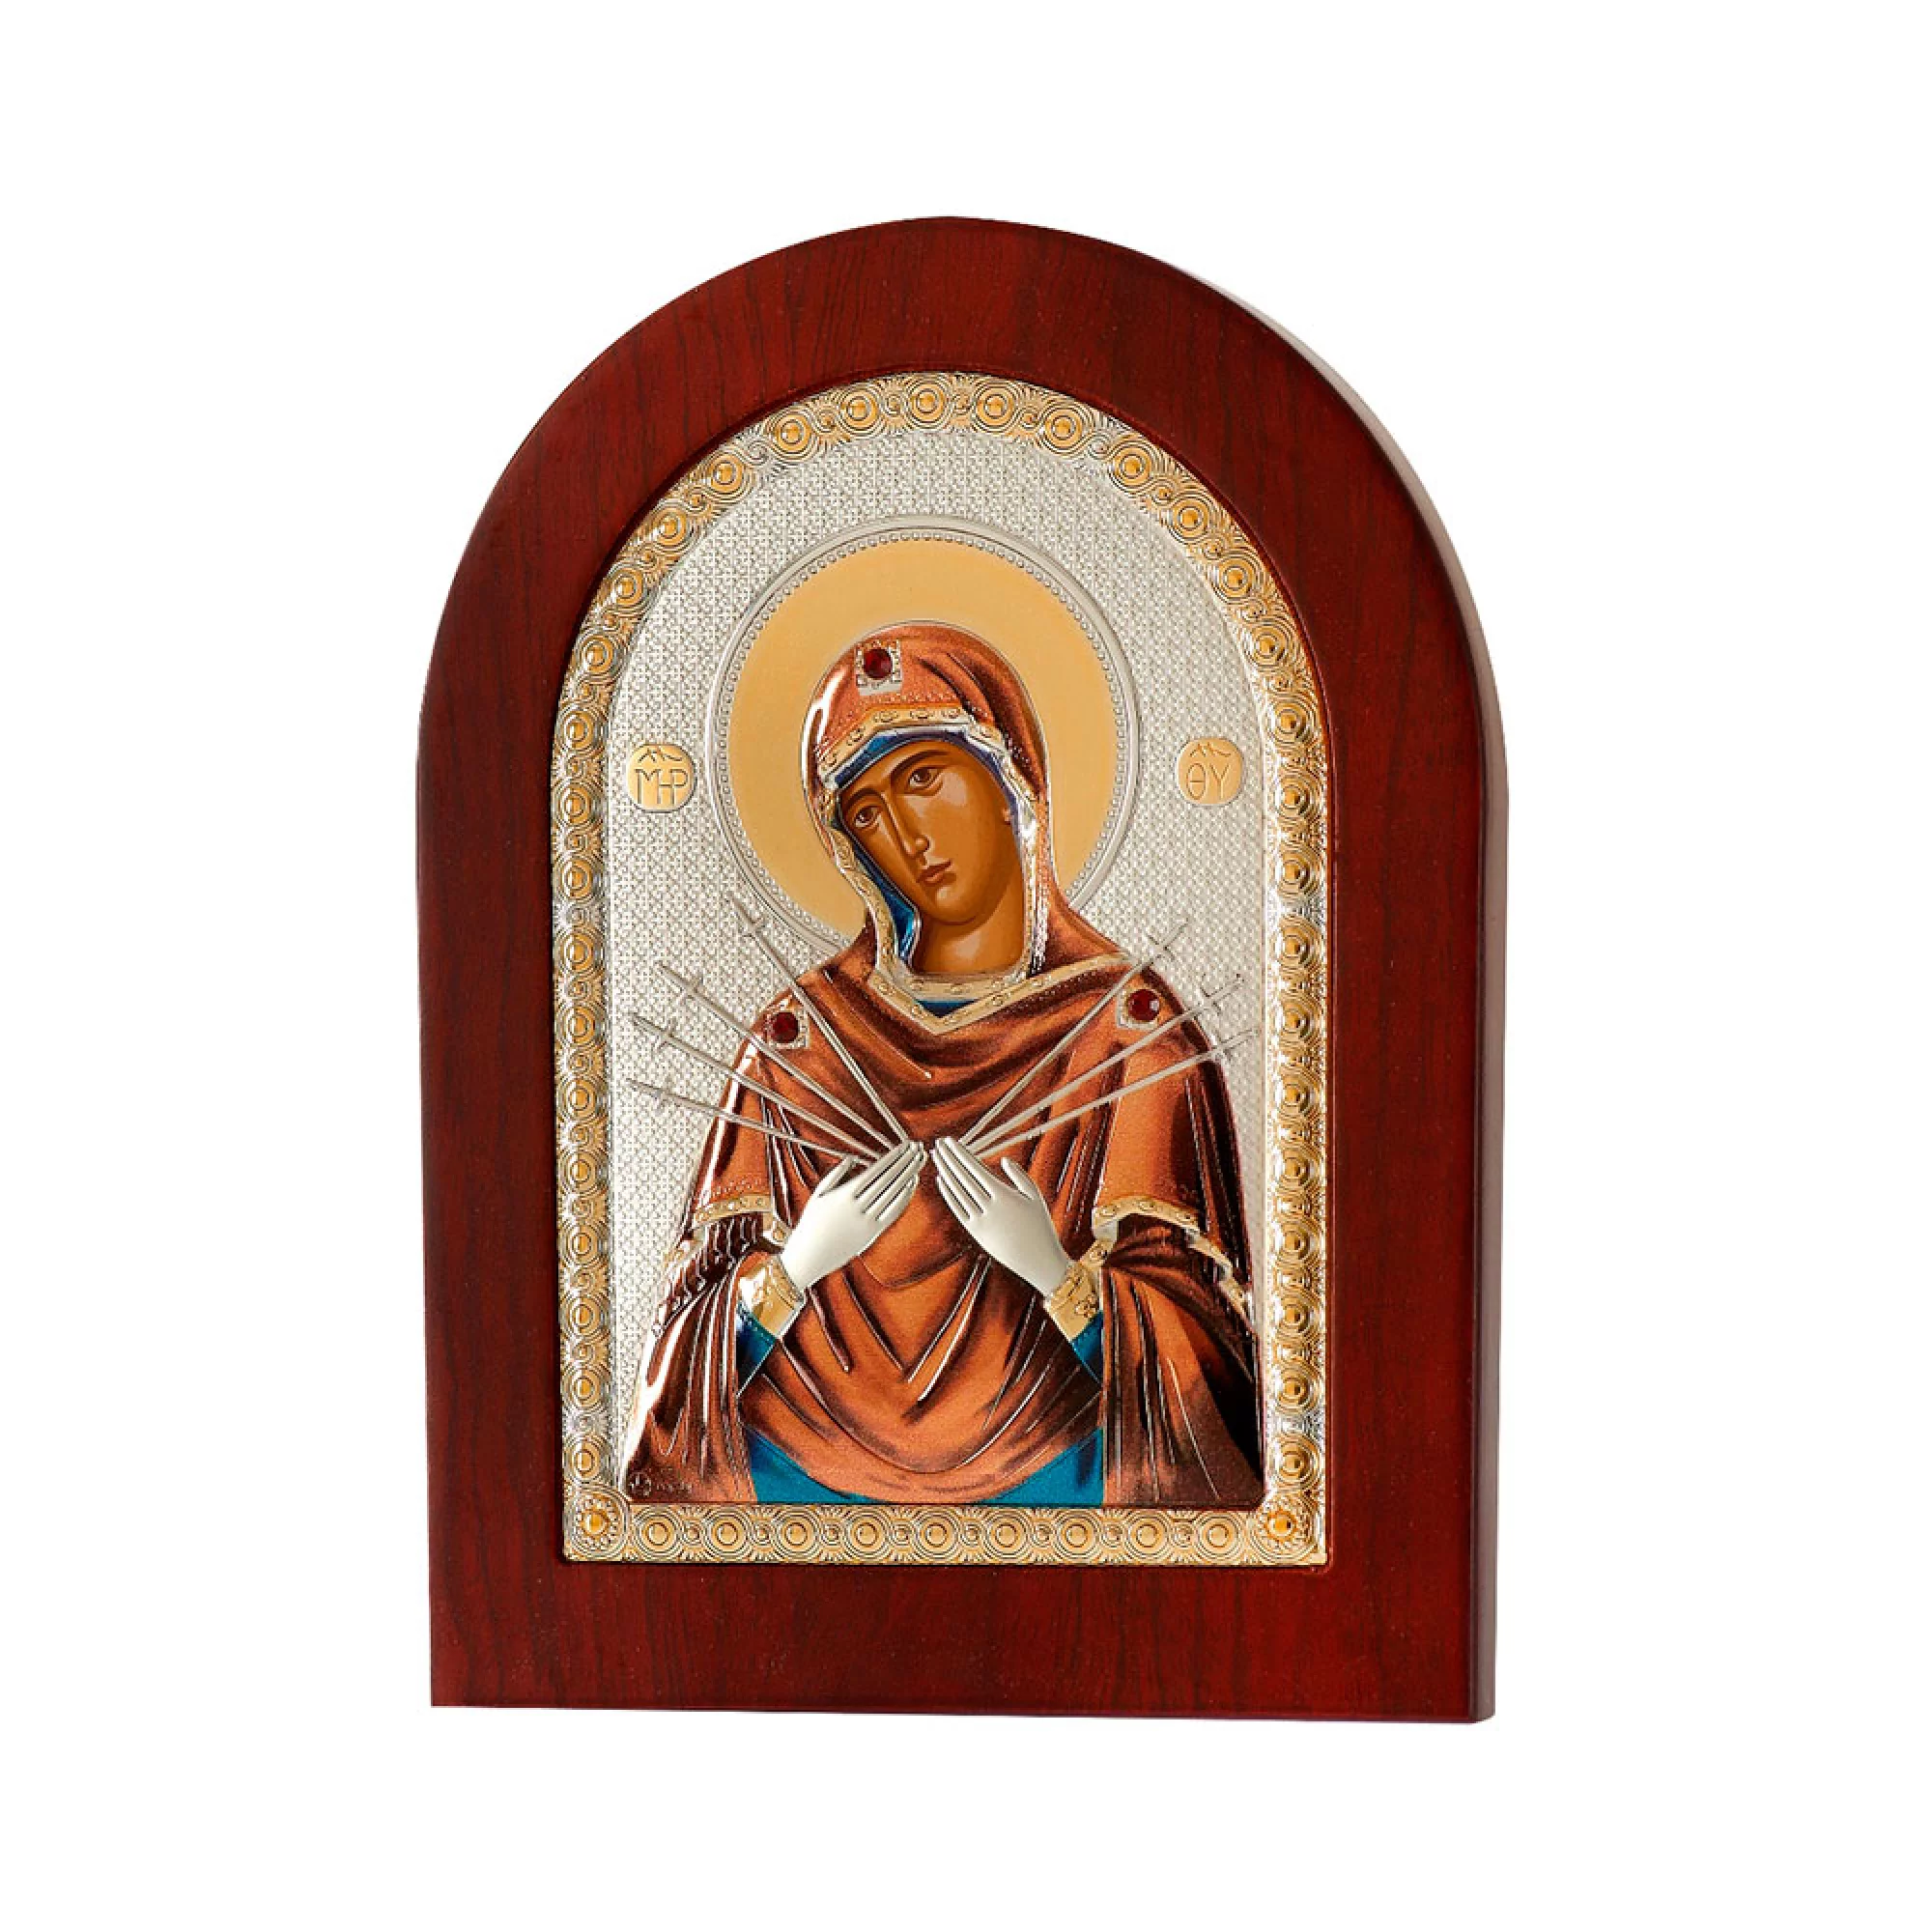 Икона Пресвятая Богородица "Семистрельная" 95х75 мм - 1593219 – изображение 1